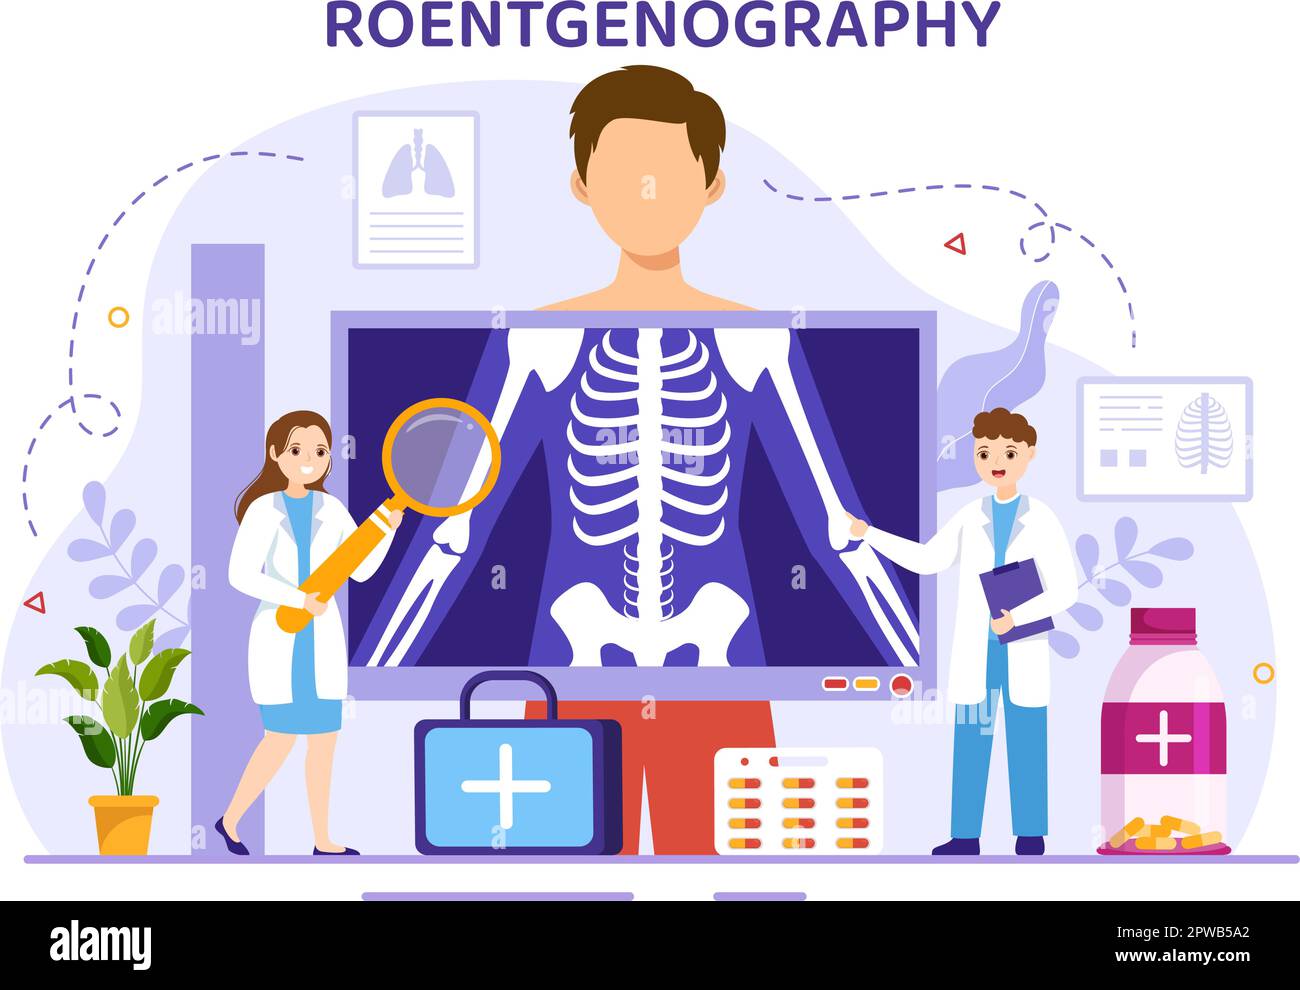 Röntgendarstellung mit Durchleuchtungs-Body-Check-Verfahren, Röntgen-Scanning oder Röntgen in Health Care Flat Cartoon handgezeichnete Vorlagen Stock Vektor